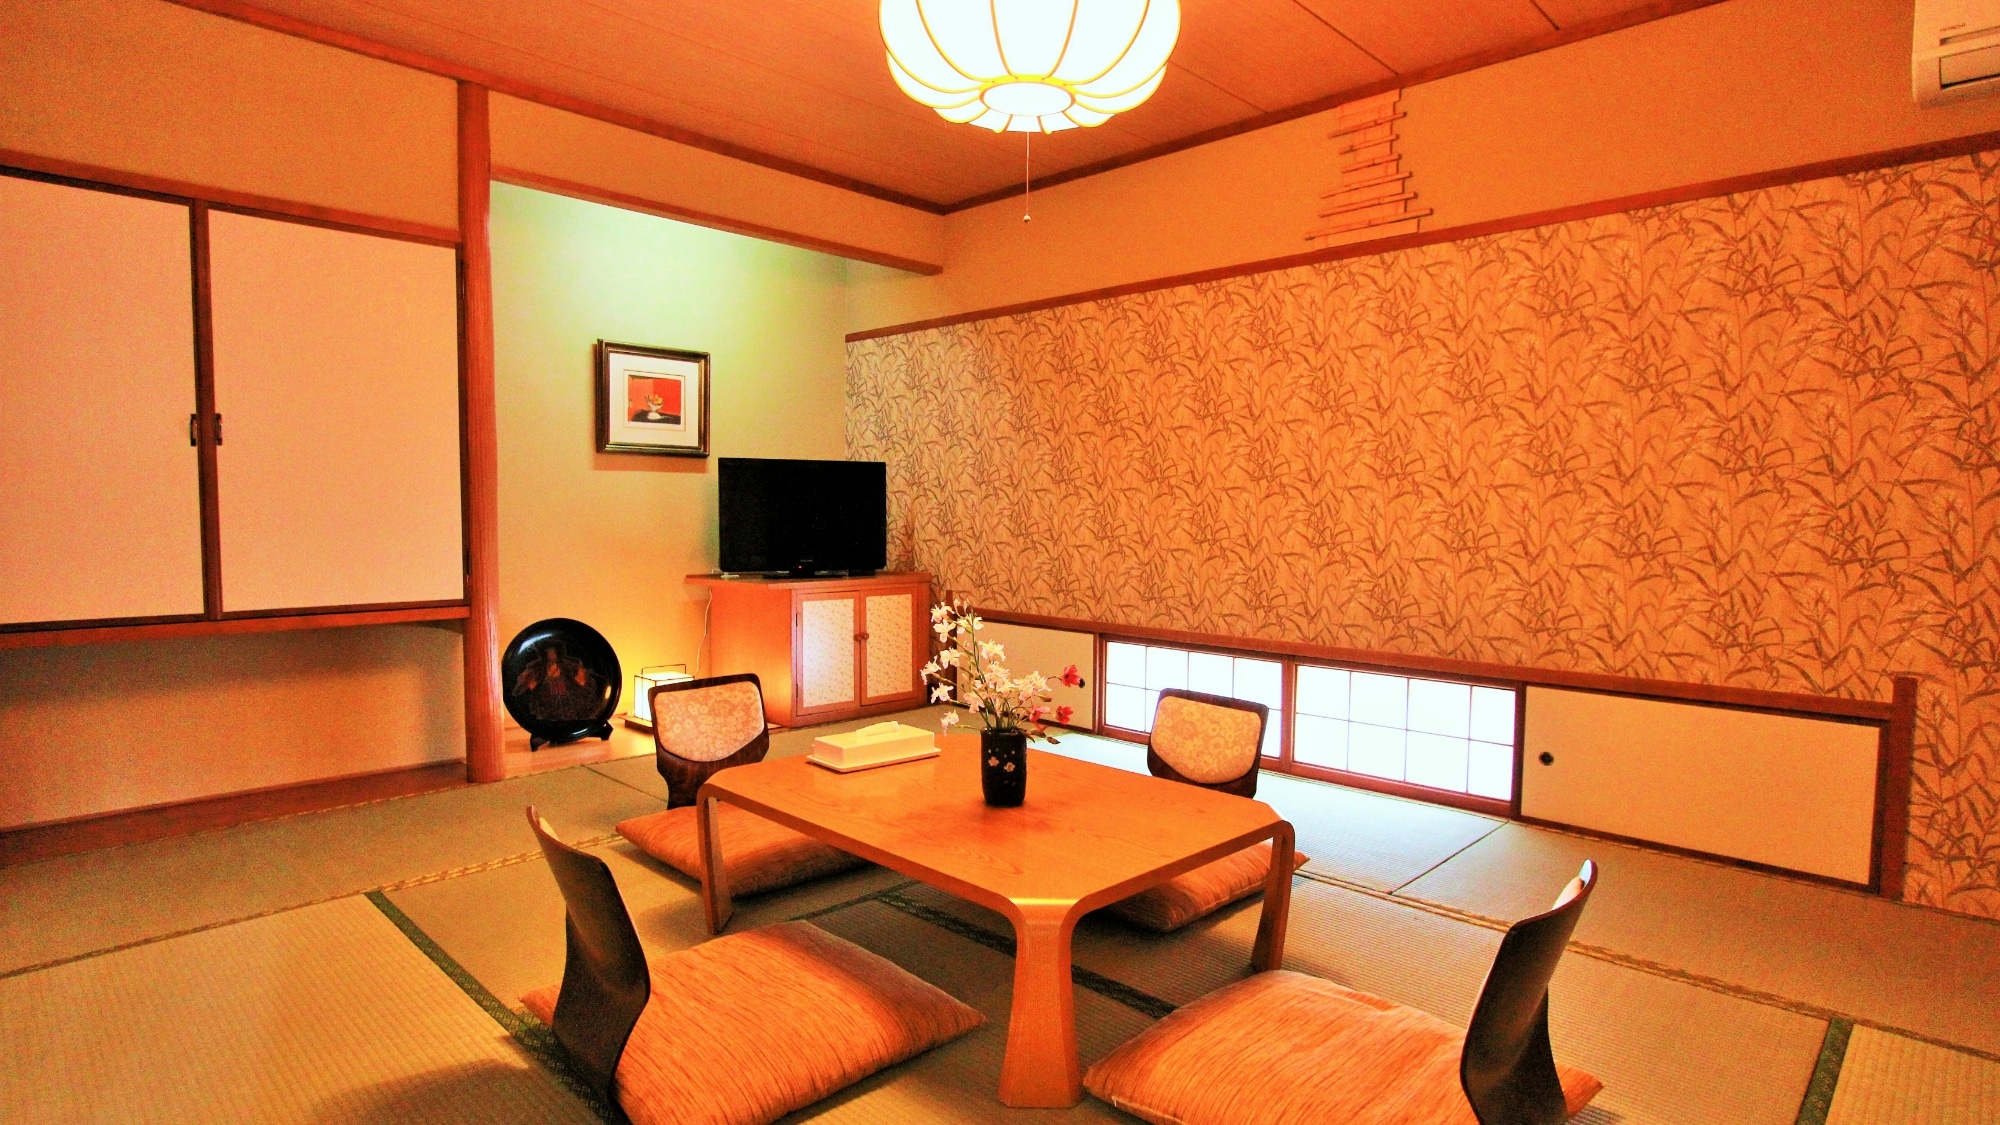 ห้องสไตล์ญี่ปุ่น 10 เสื่อทาทามิ เพลิดเพลินกับพื้นที่ญี่ปุ่นที่กว้างขวาง